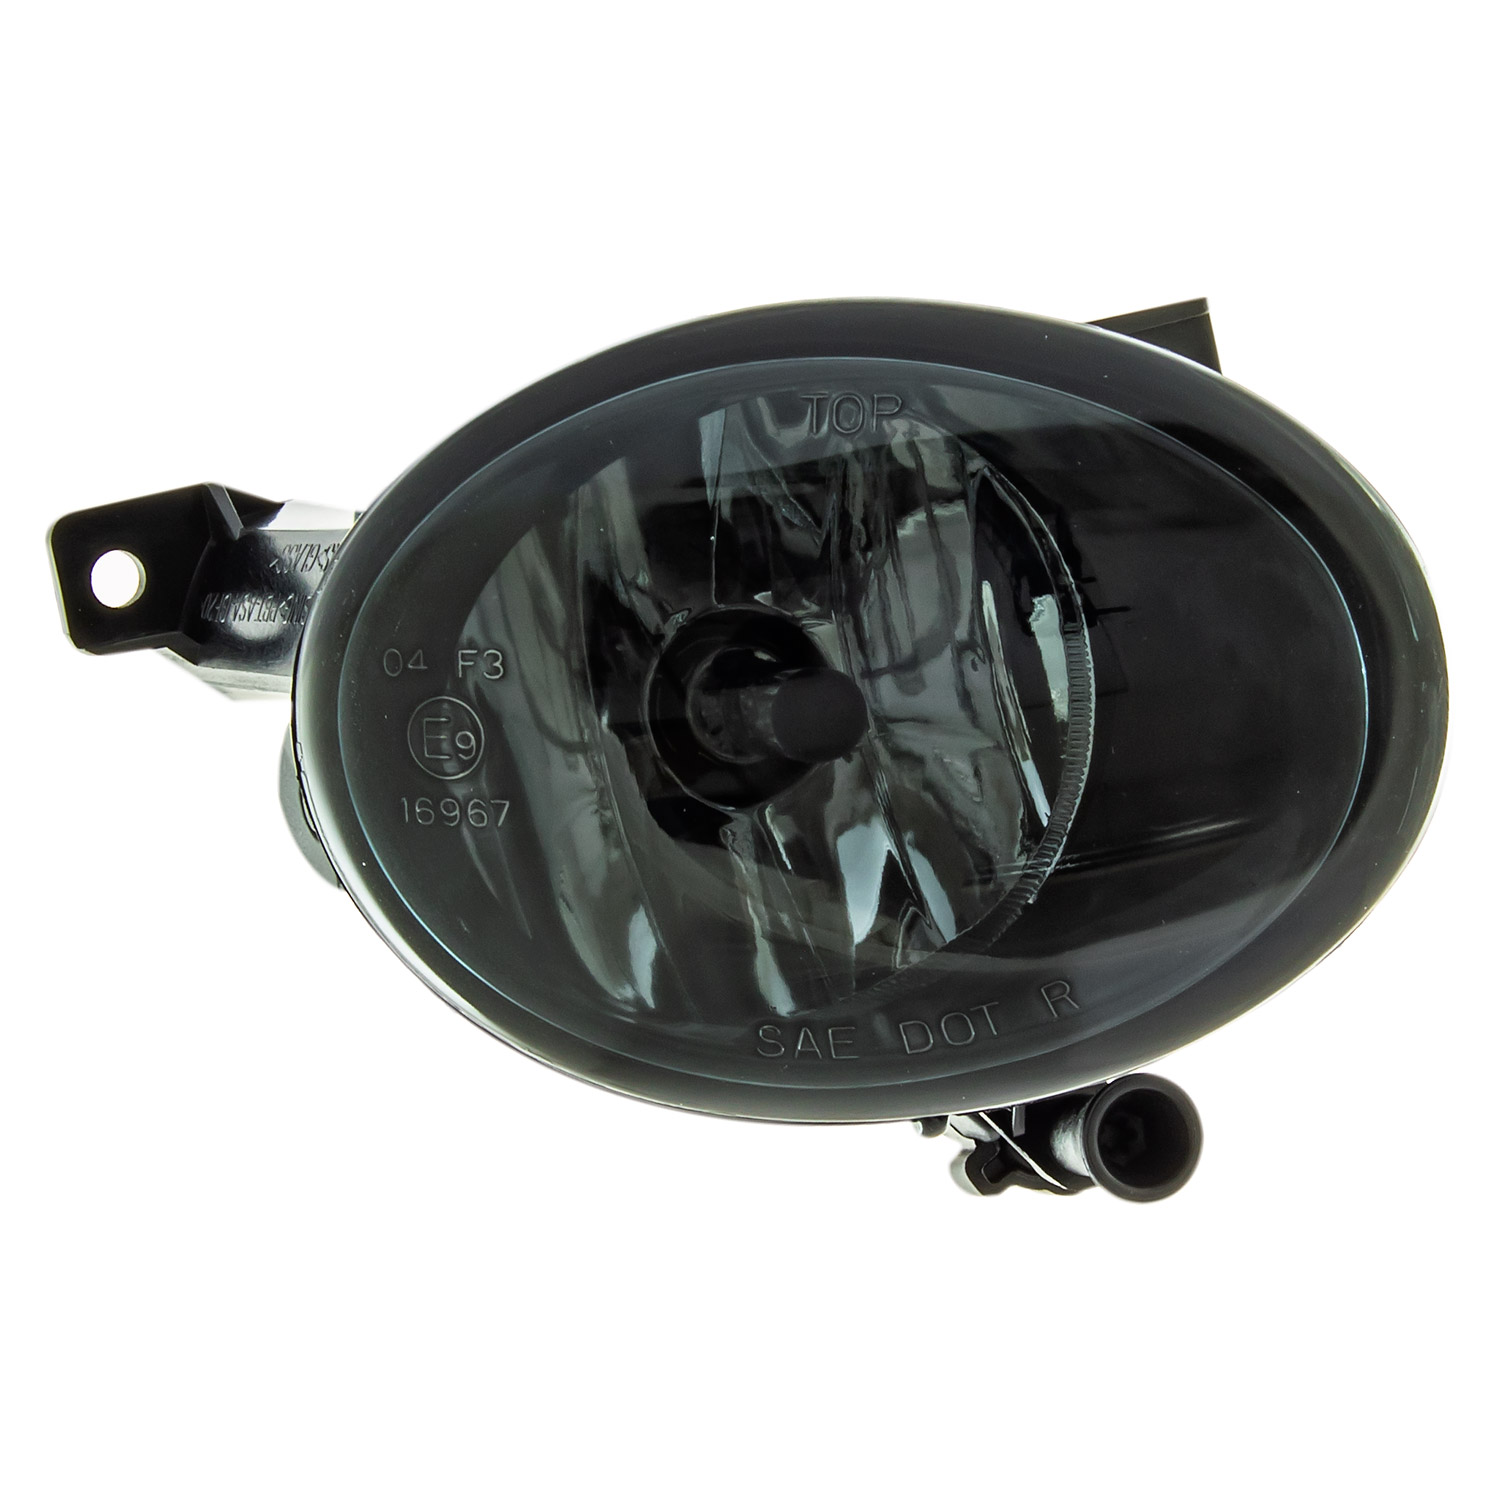 Nebelscheinwerfer Set HB4 + Gitter + Zubehör für Golf 6 VI Bj. 08-13 schwarz